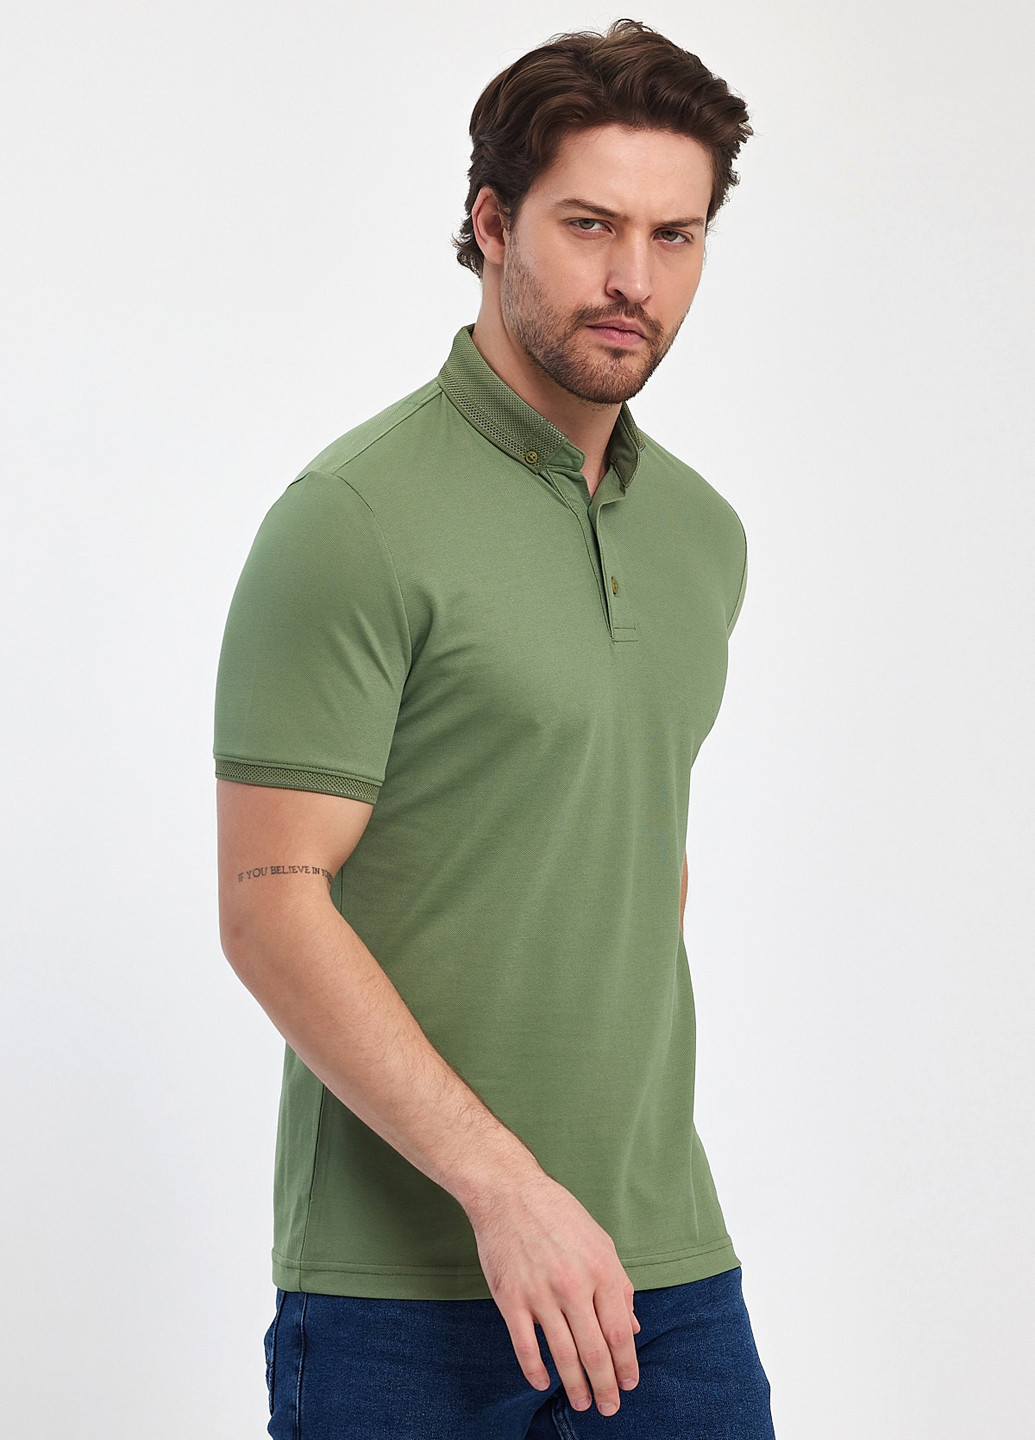 Оливковая футболка-поло для мужчин Trend Collection однотонная